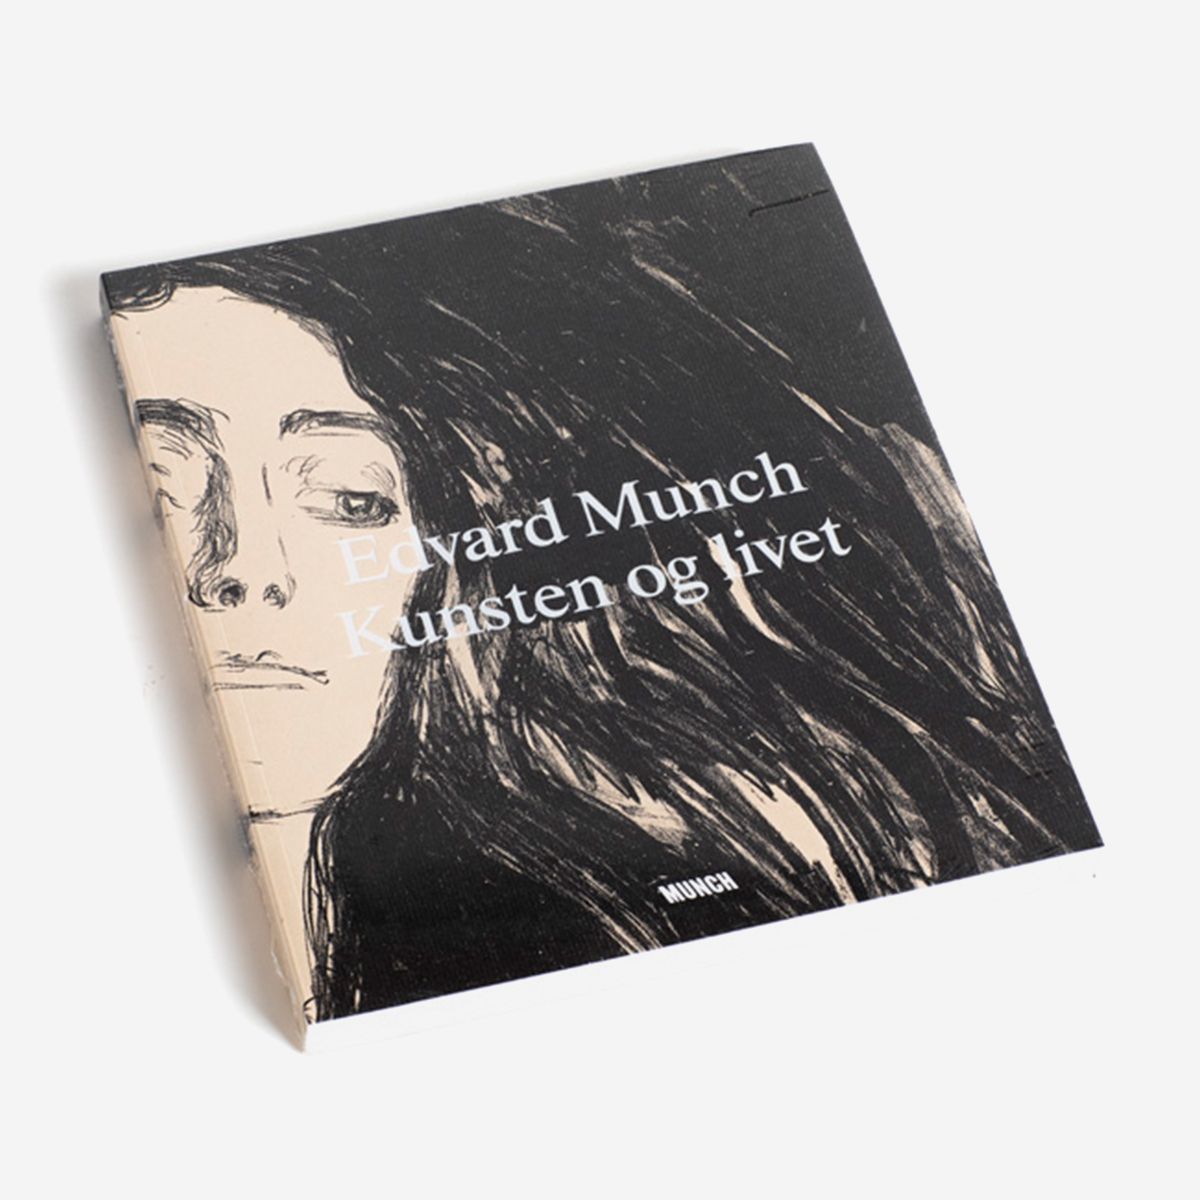 Edvard Munch. Kunsten og livet